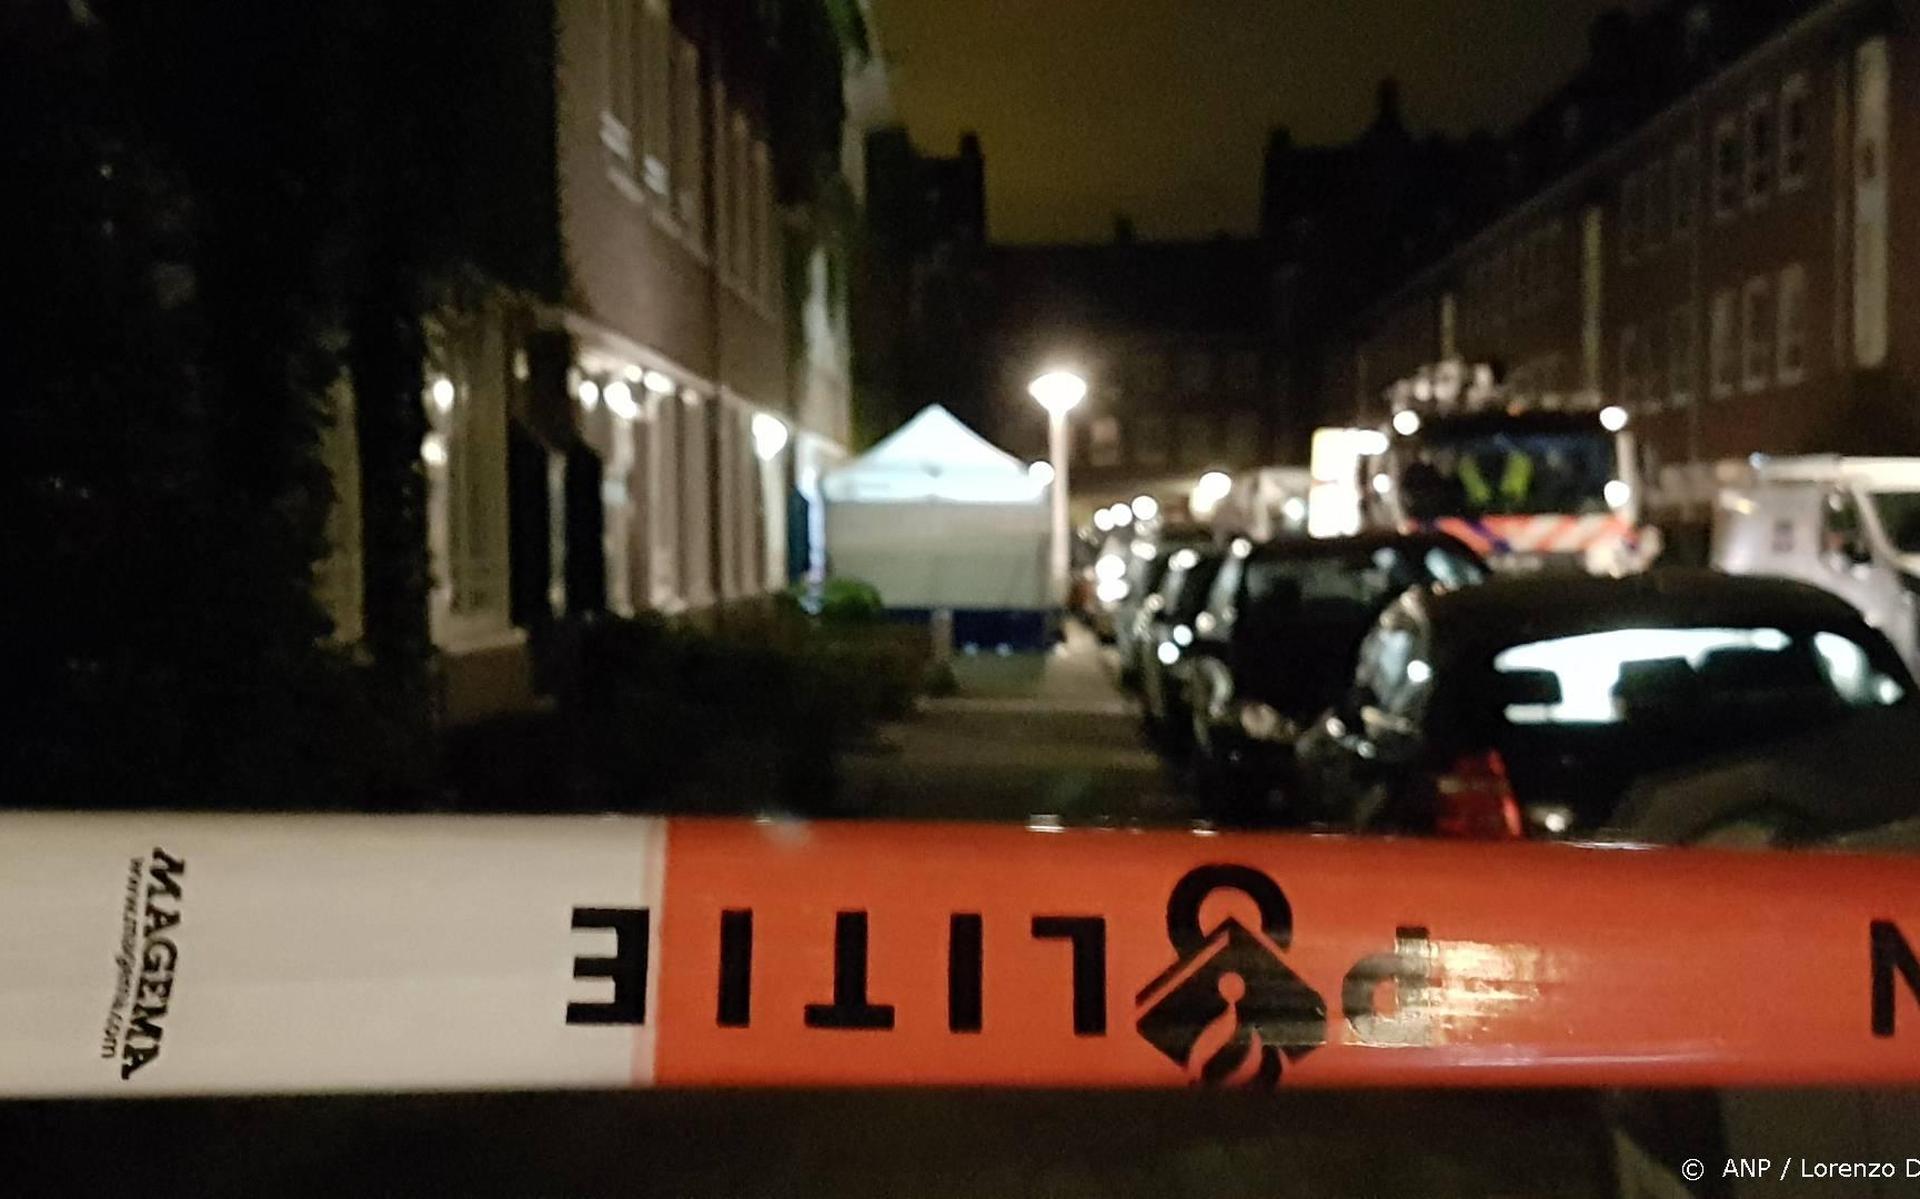 20 rechercheurs onderzoeken fatale schietpartij Ridderkerk